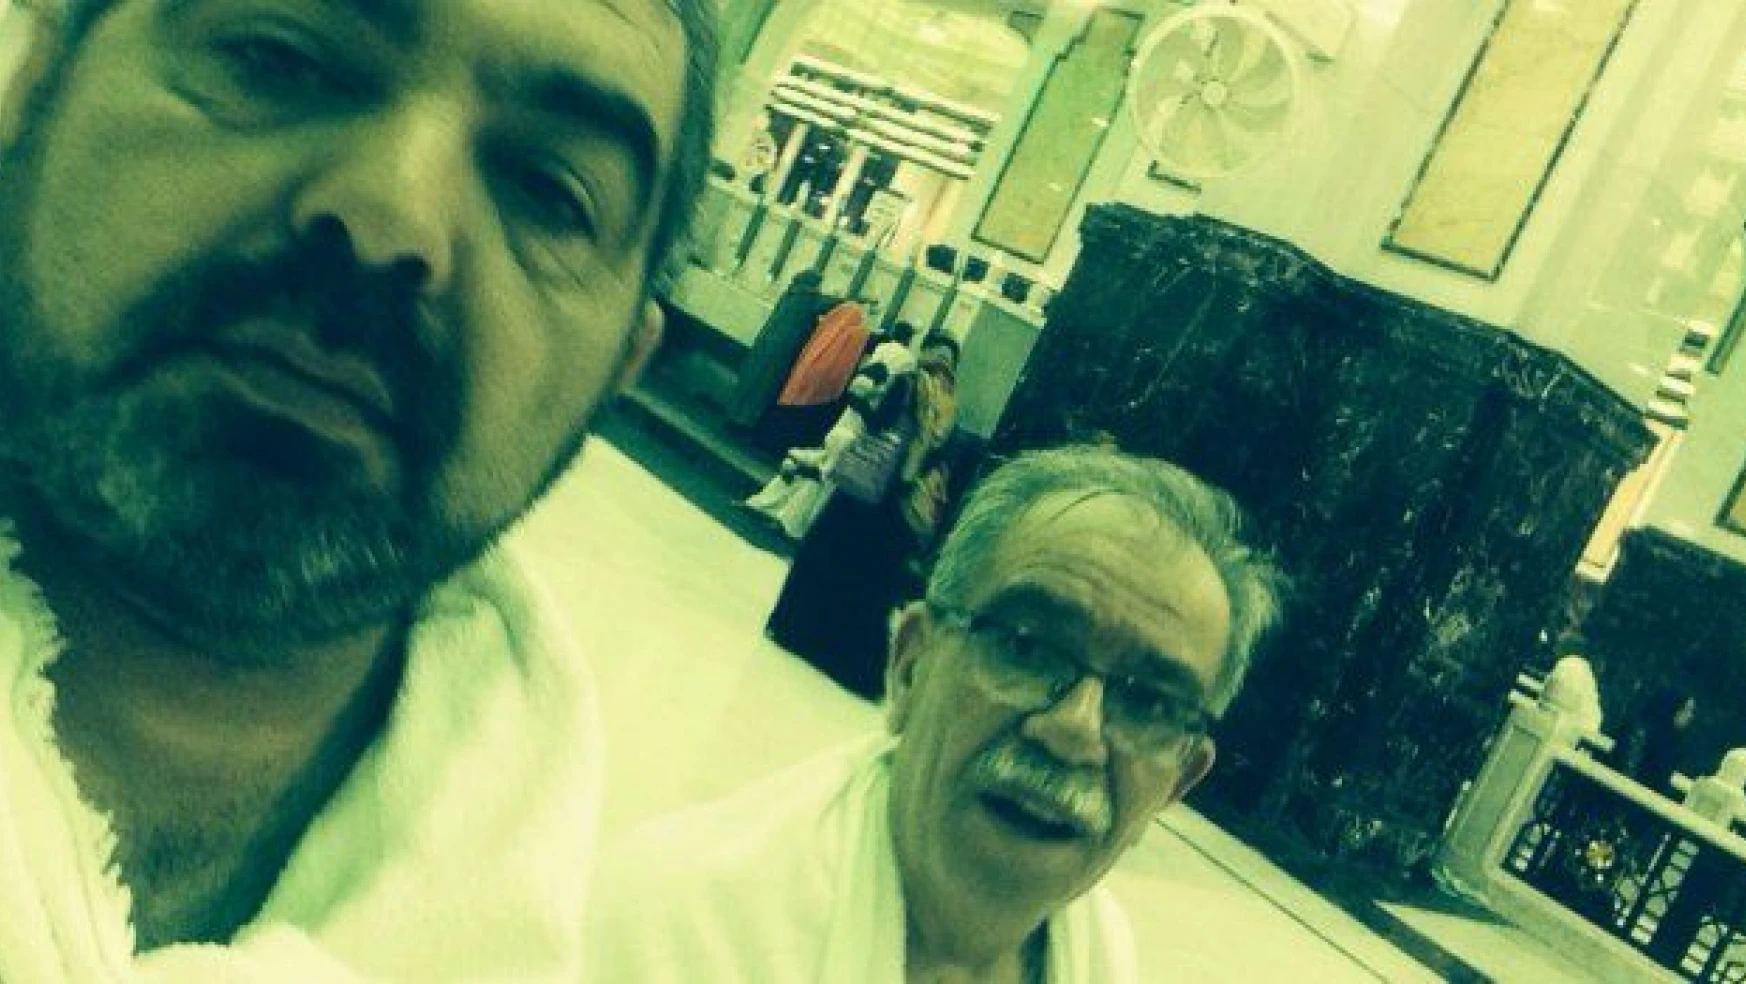 İşte Hasan Karakaya'nın Mekke'deki son fotoğrafı